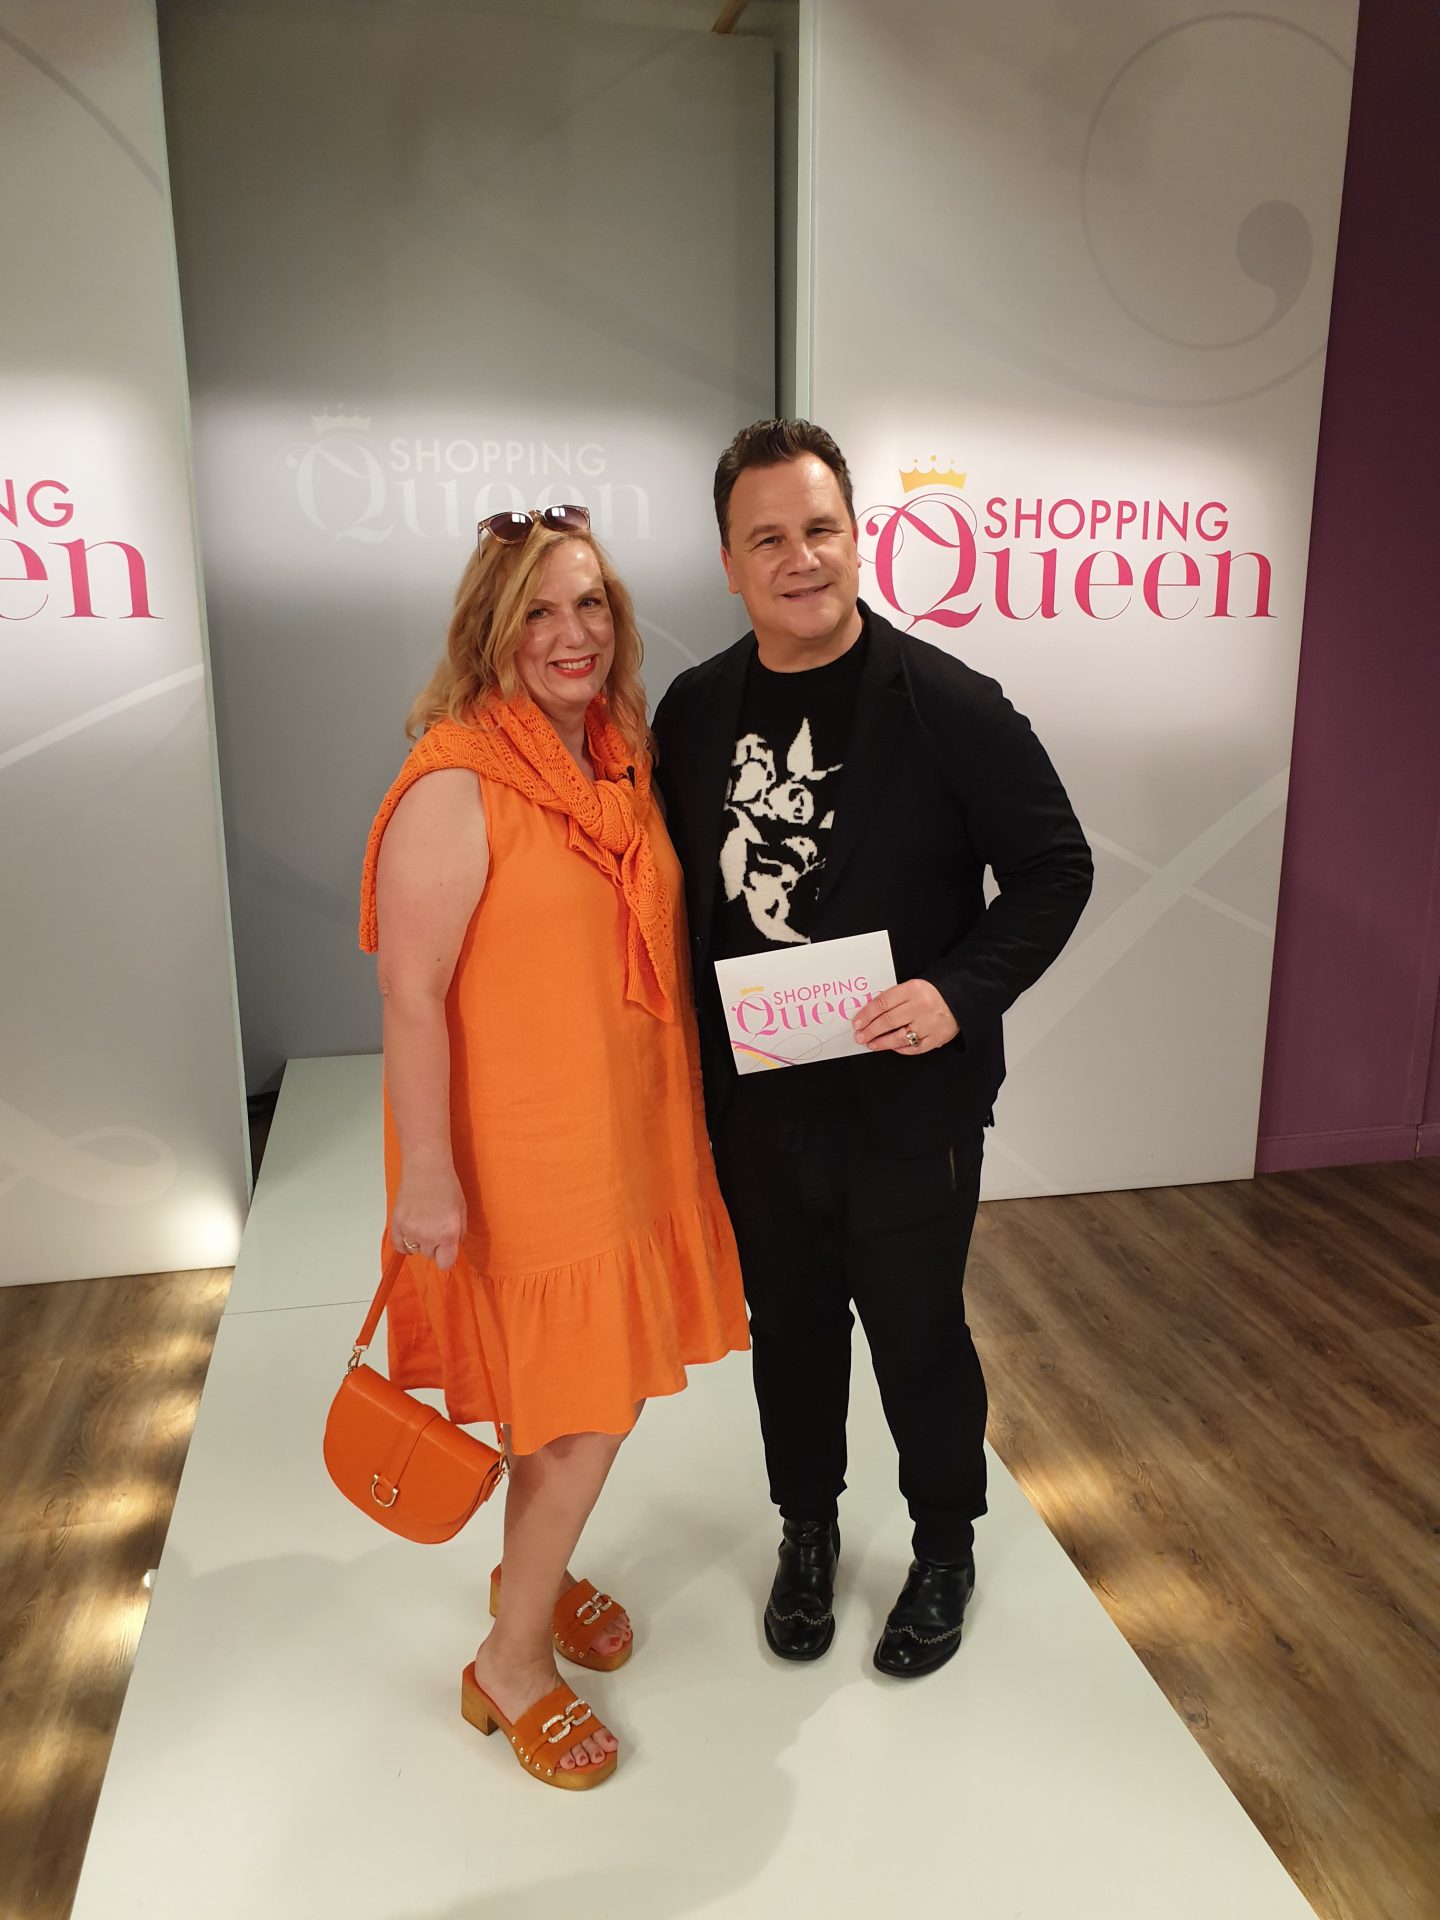 Das große Finale von Shopping Queen beim Designer Guido Maria Kretschmer. Es war eine tolle Erfahrung dabei gewesen zu sein. 